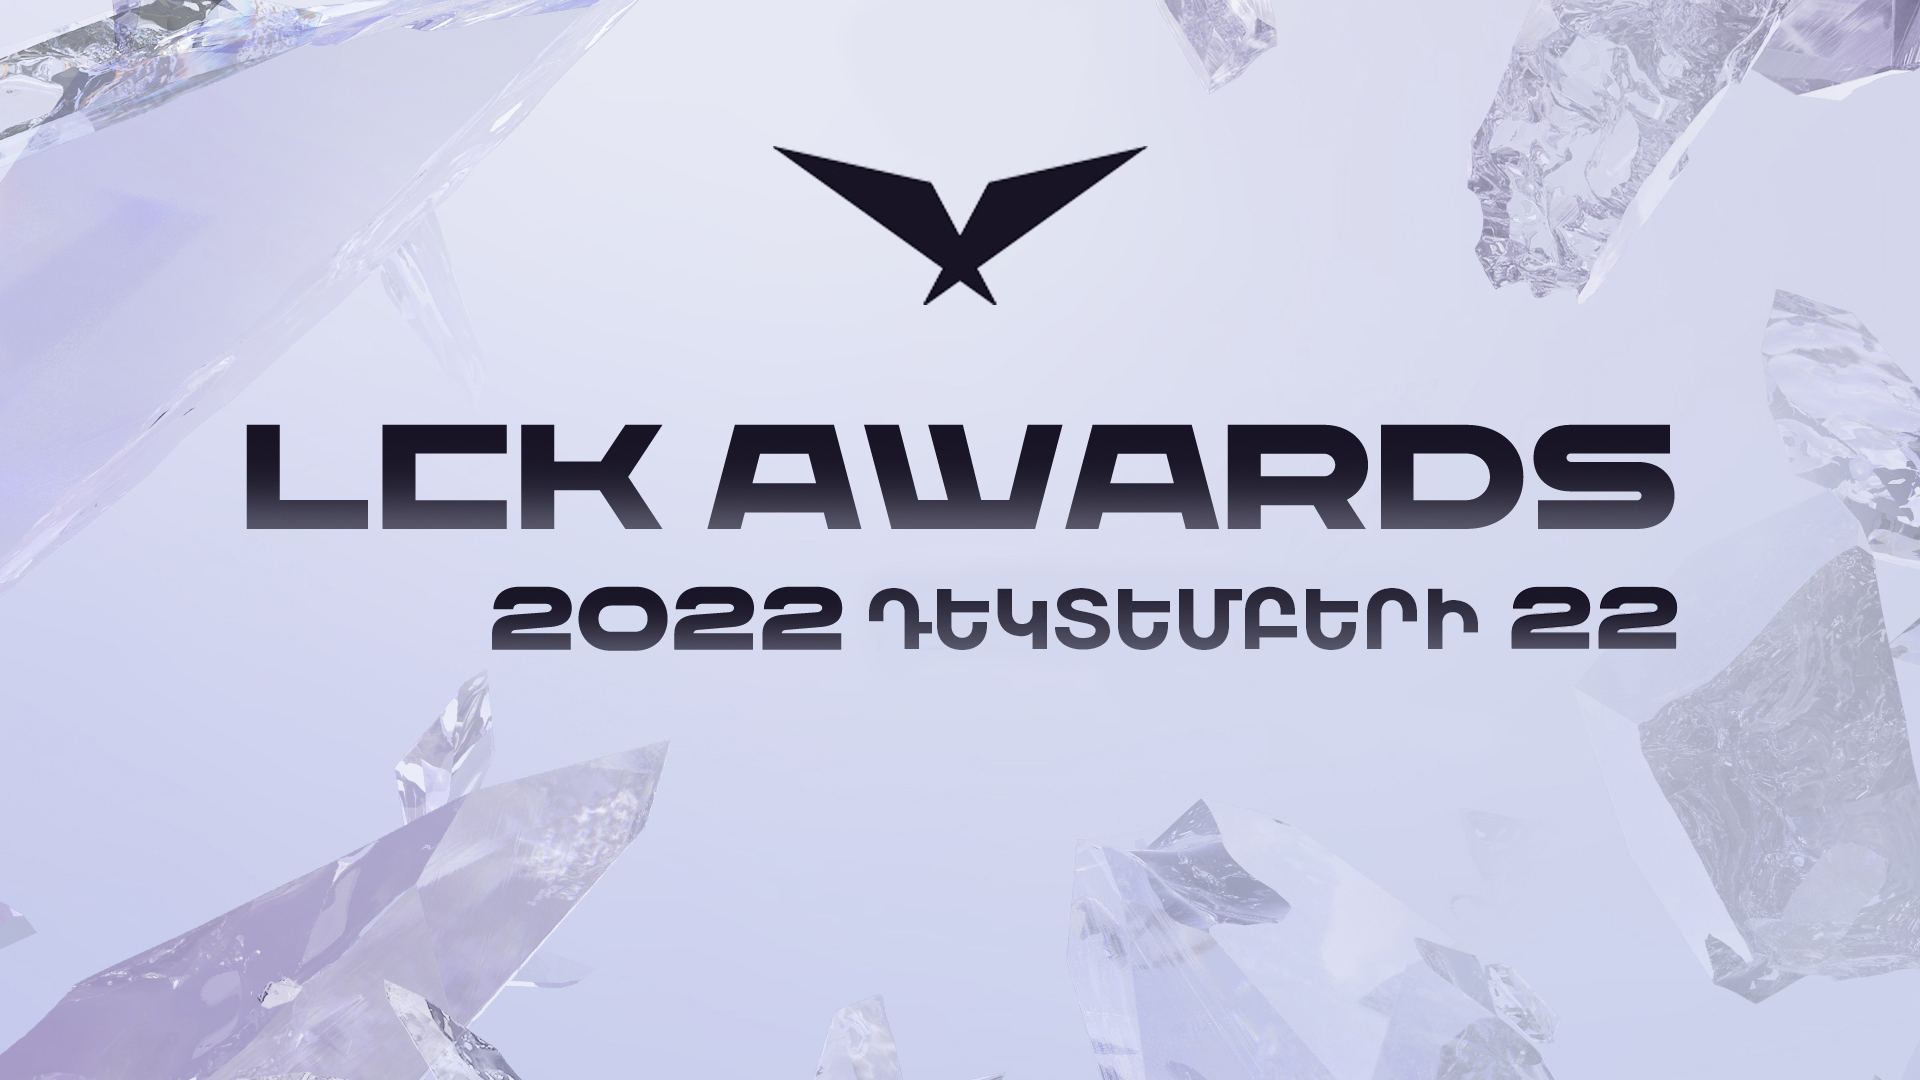 LCK Awards-ը կիբերսպորտային տարին կամփոփի դեկտեմբերի 22-ին